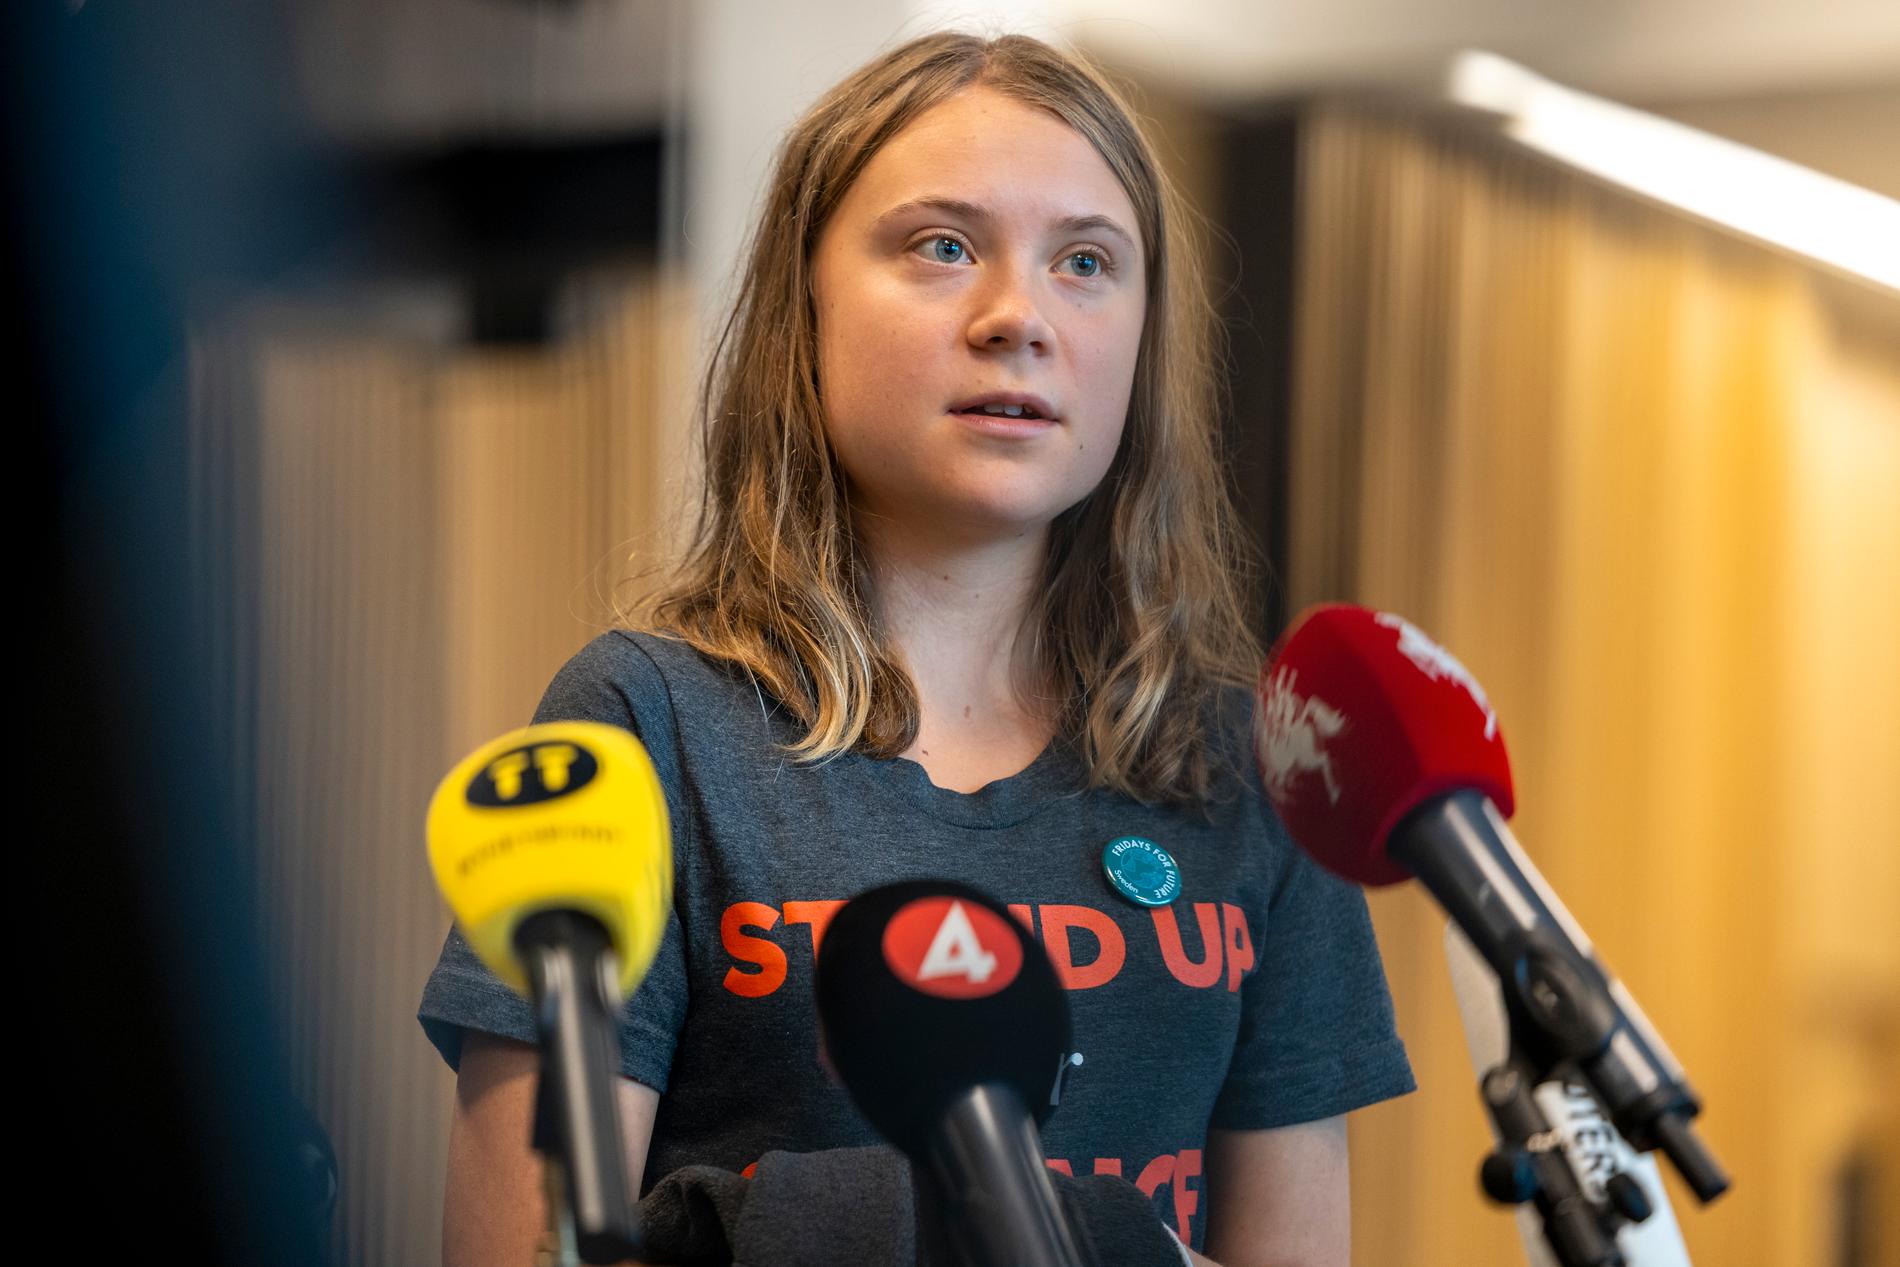 ”Miljöaktivisten Greta Thunberg har vid det här laget antisemitstämplats på nästan alla liberala kultursidor och därtill utnämnts till ’tjej-Hitler’ i SvD.”